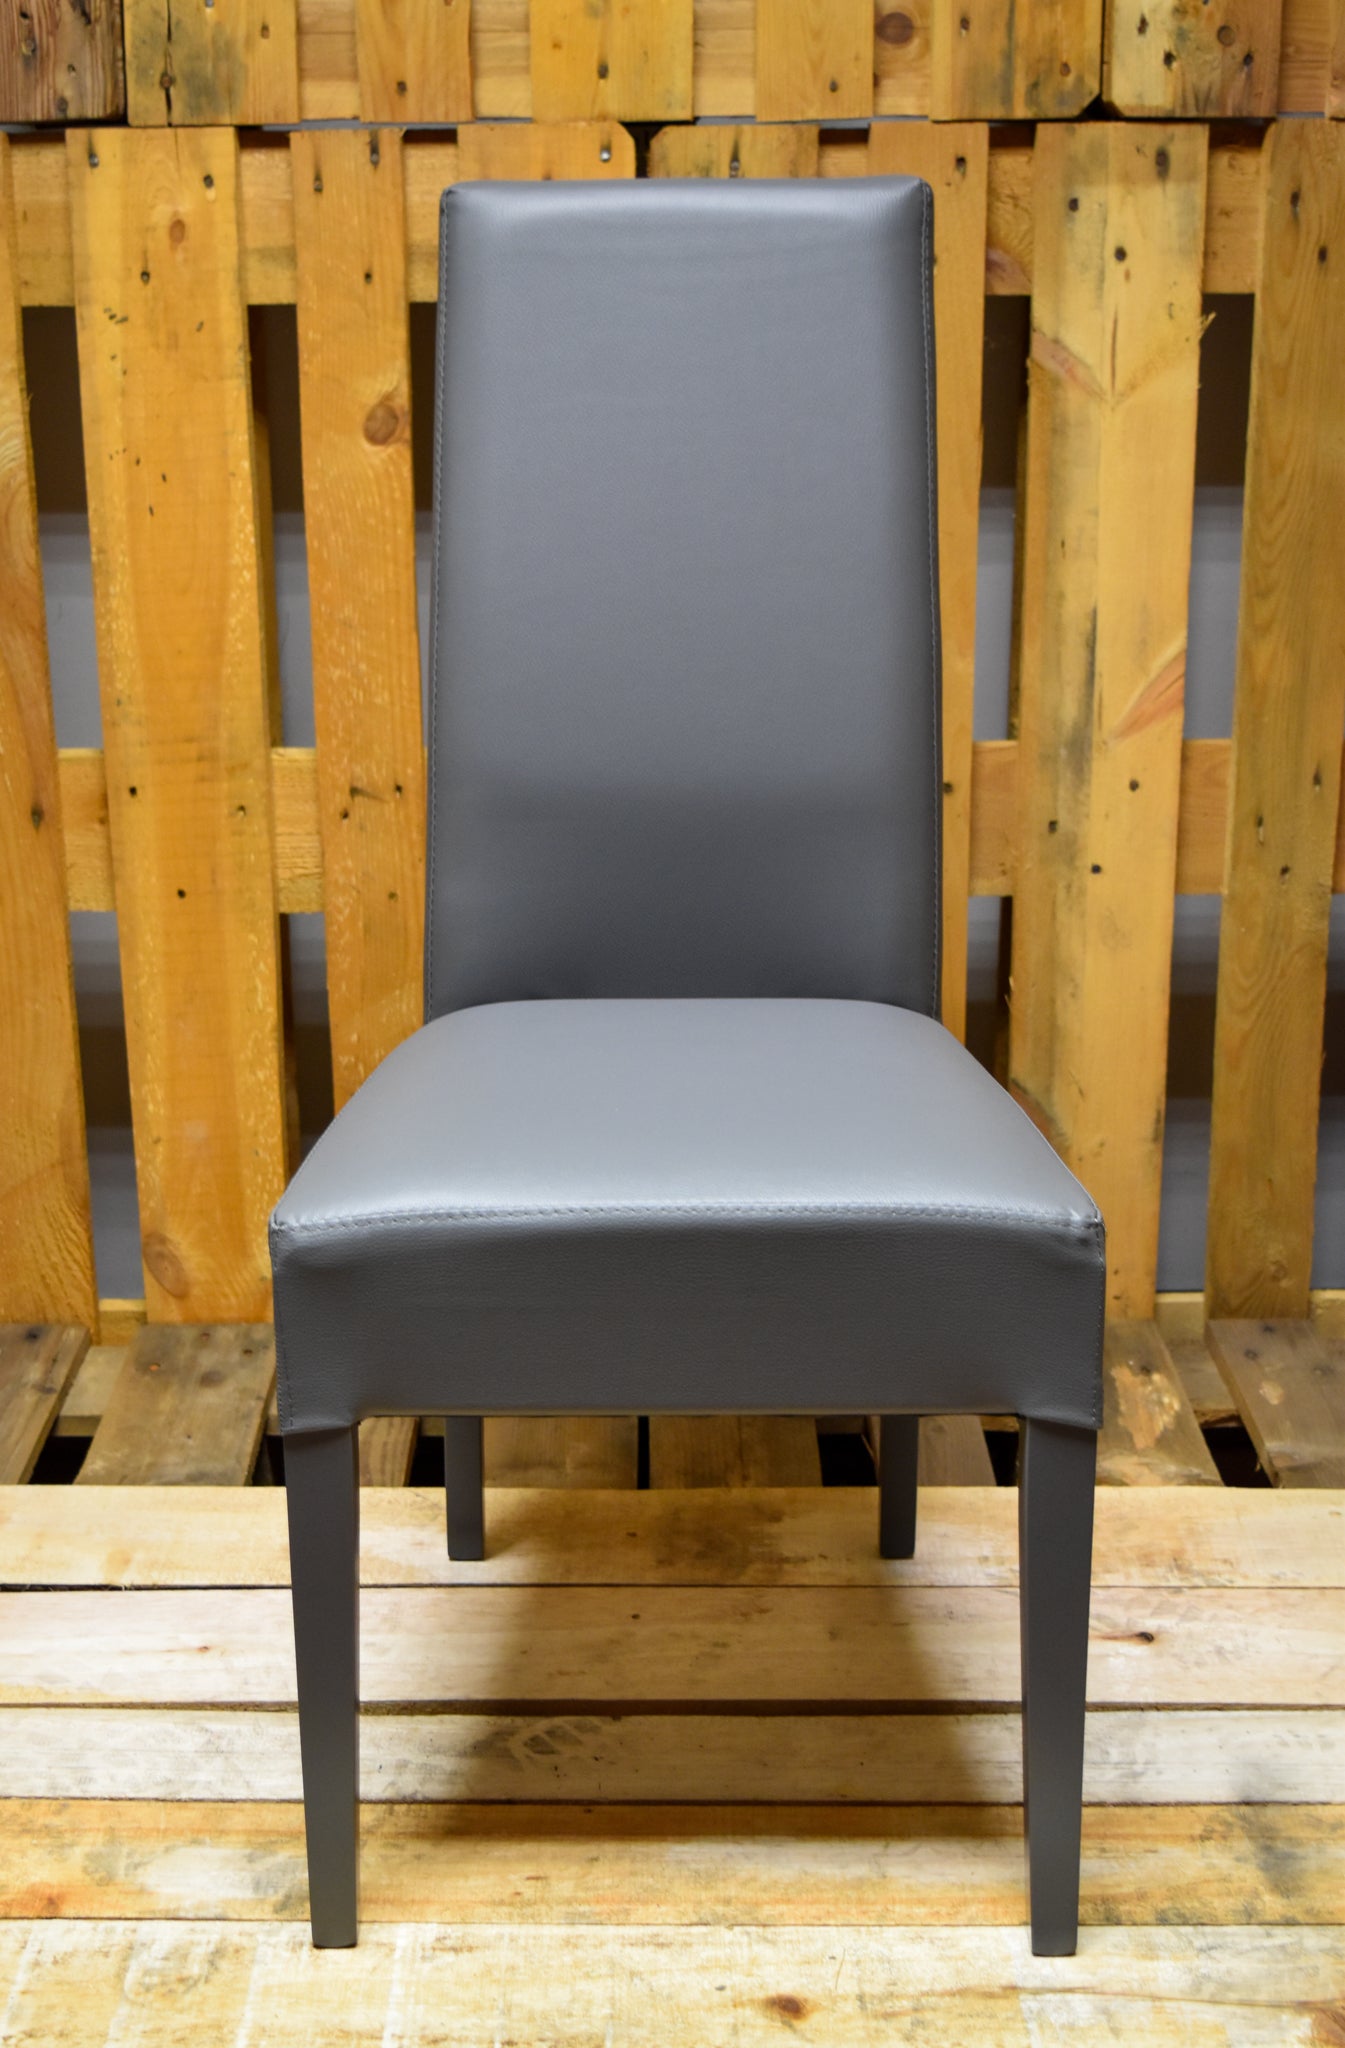 Stock model 36 padded dark gray chairs